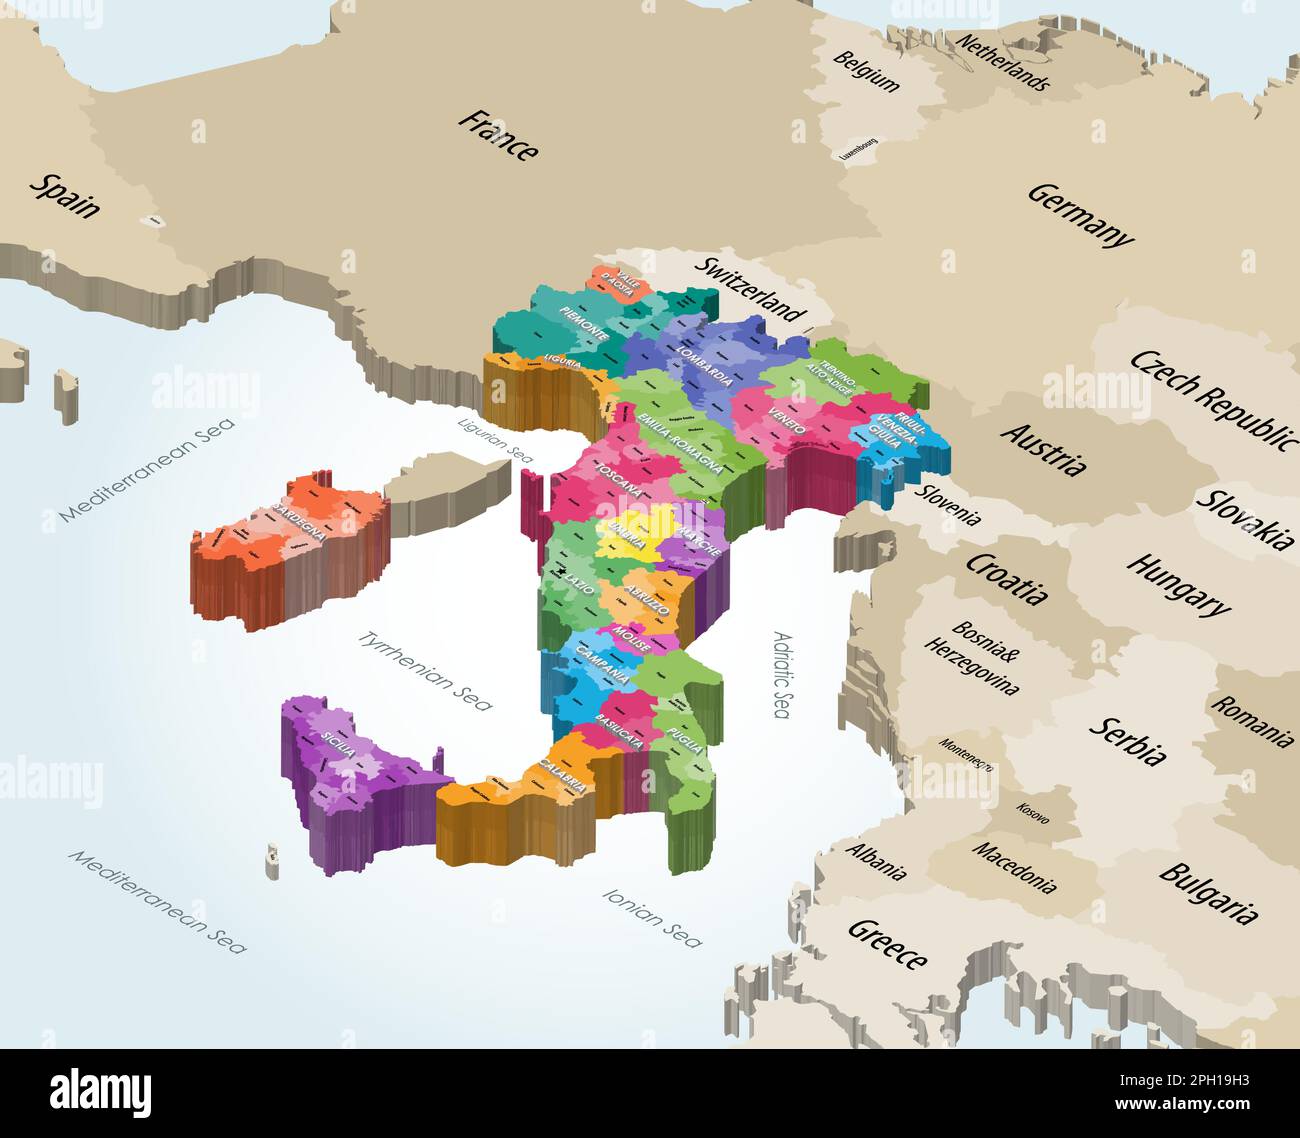 Mappa isometrica dei comuni italiani colorata per regioni amministrative con paesi vicini Illustrazione Vettoriale